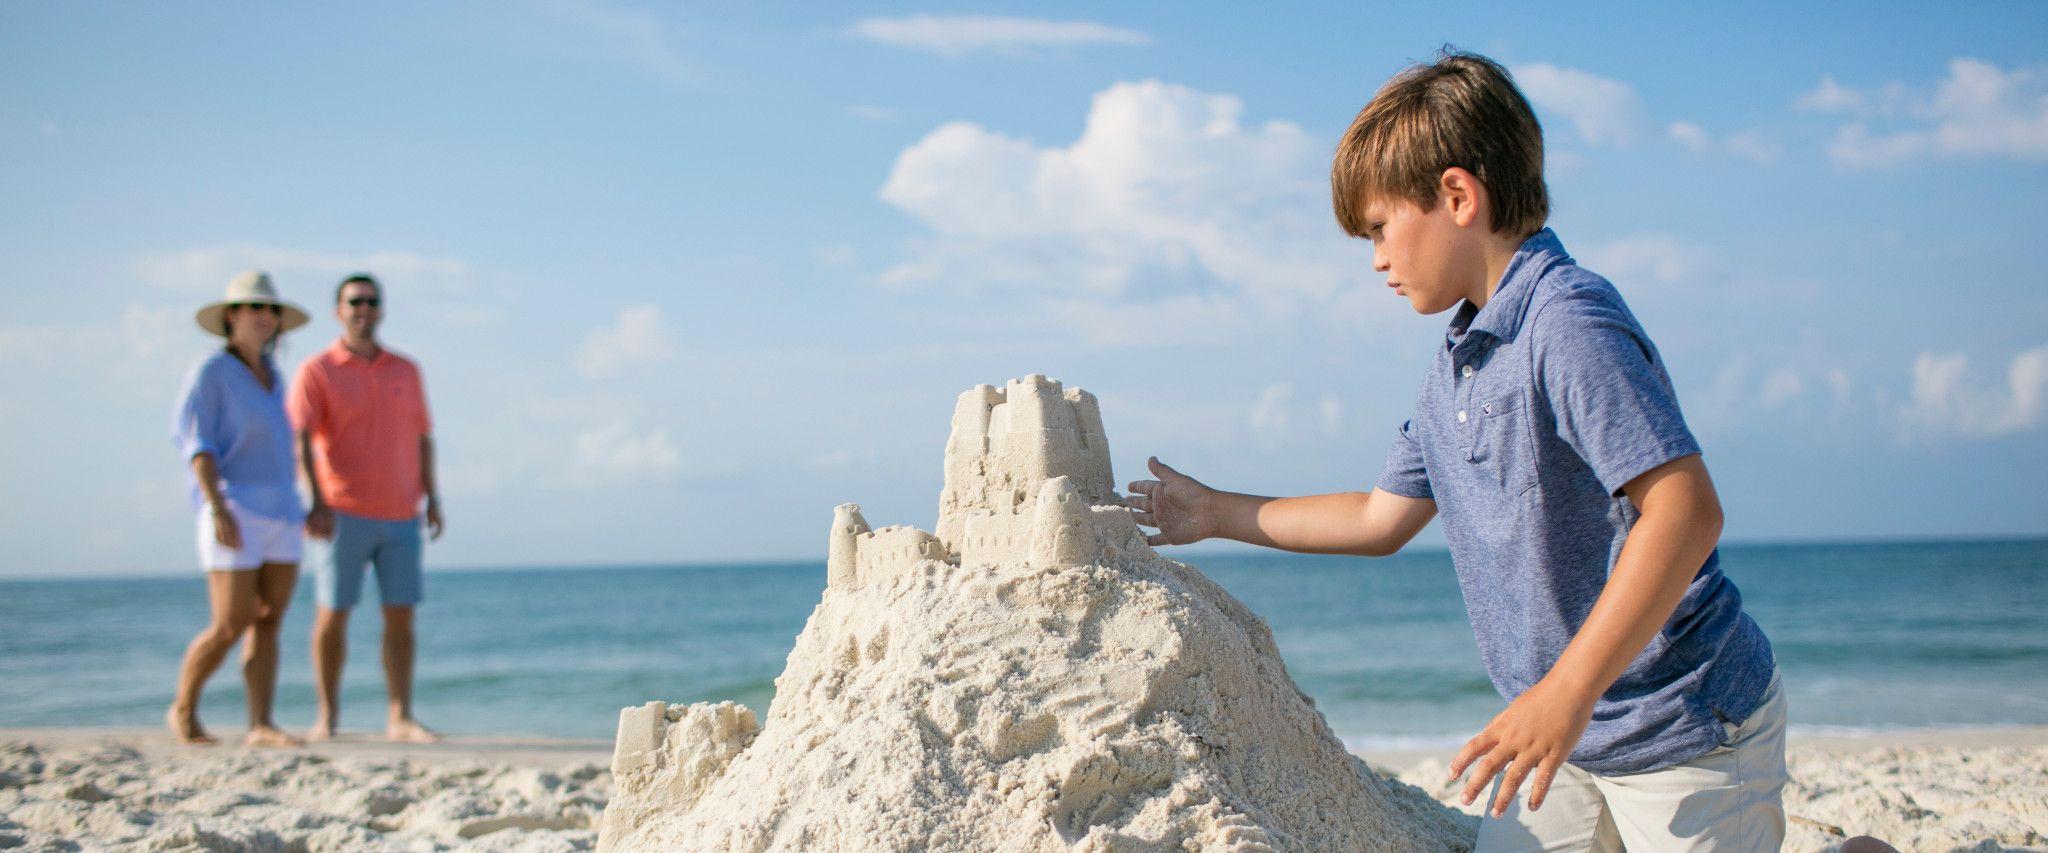 Young boy building sandcastle in Orange Beach, AL